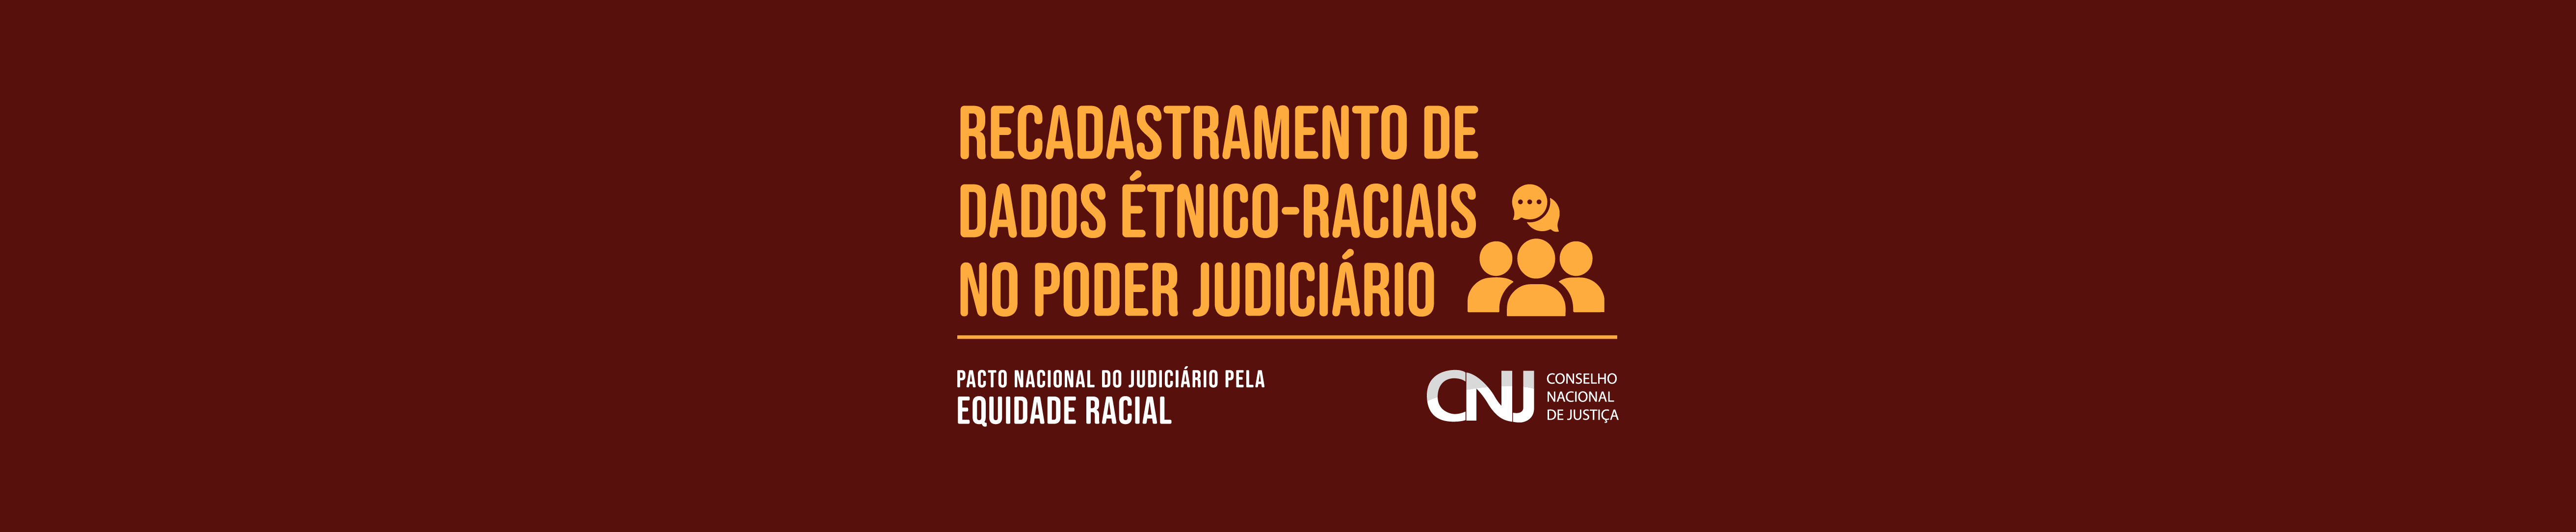 banner web da campanha Recadastramento de dados étnico-raciais no Poder Judiciário em formato jpeg medindo 1260x260 pixels